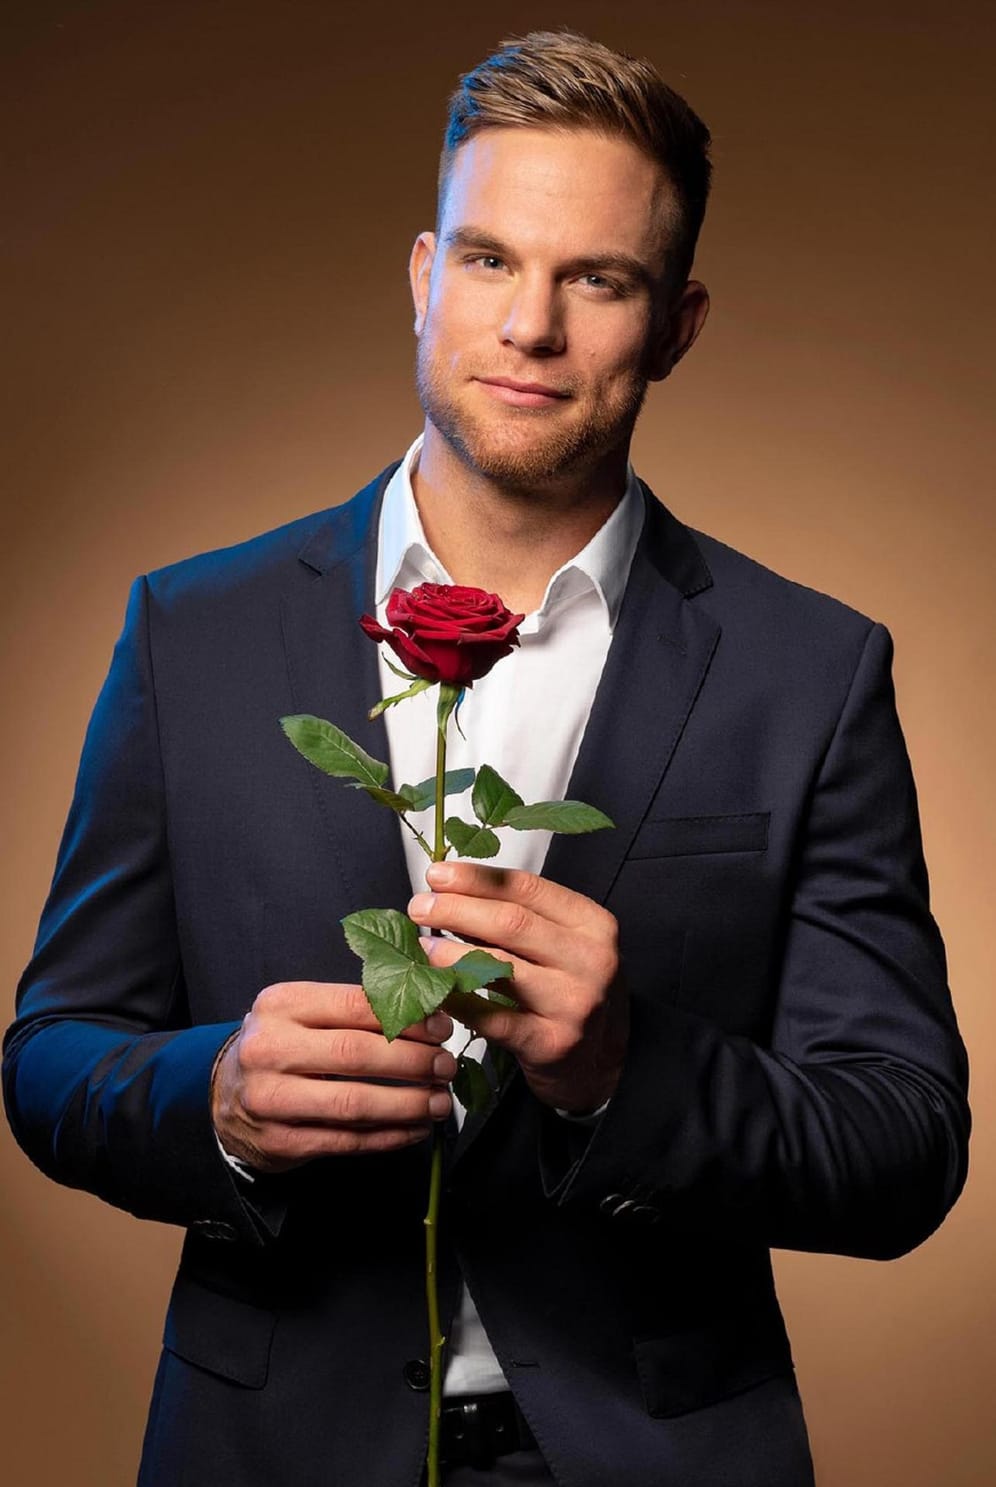 Sebastian Preuß verteilte 2020 die Rosen. Im Finale beschloss er jedoch, keiner Dame die letzte Blume zu geben.